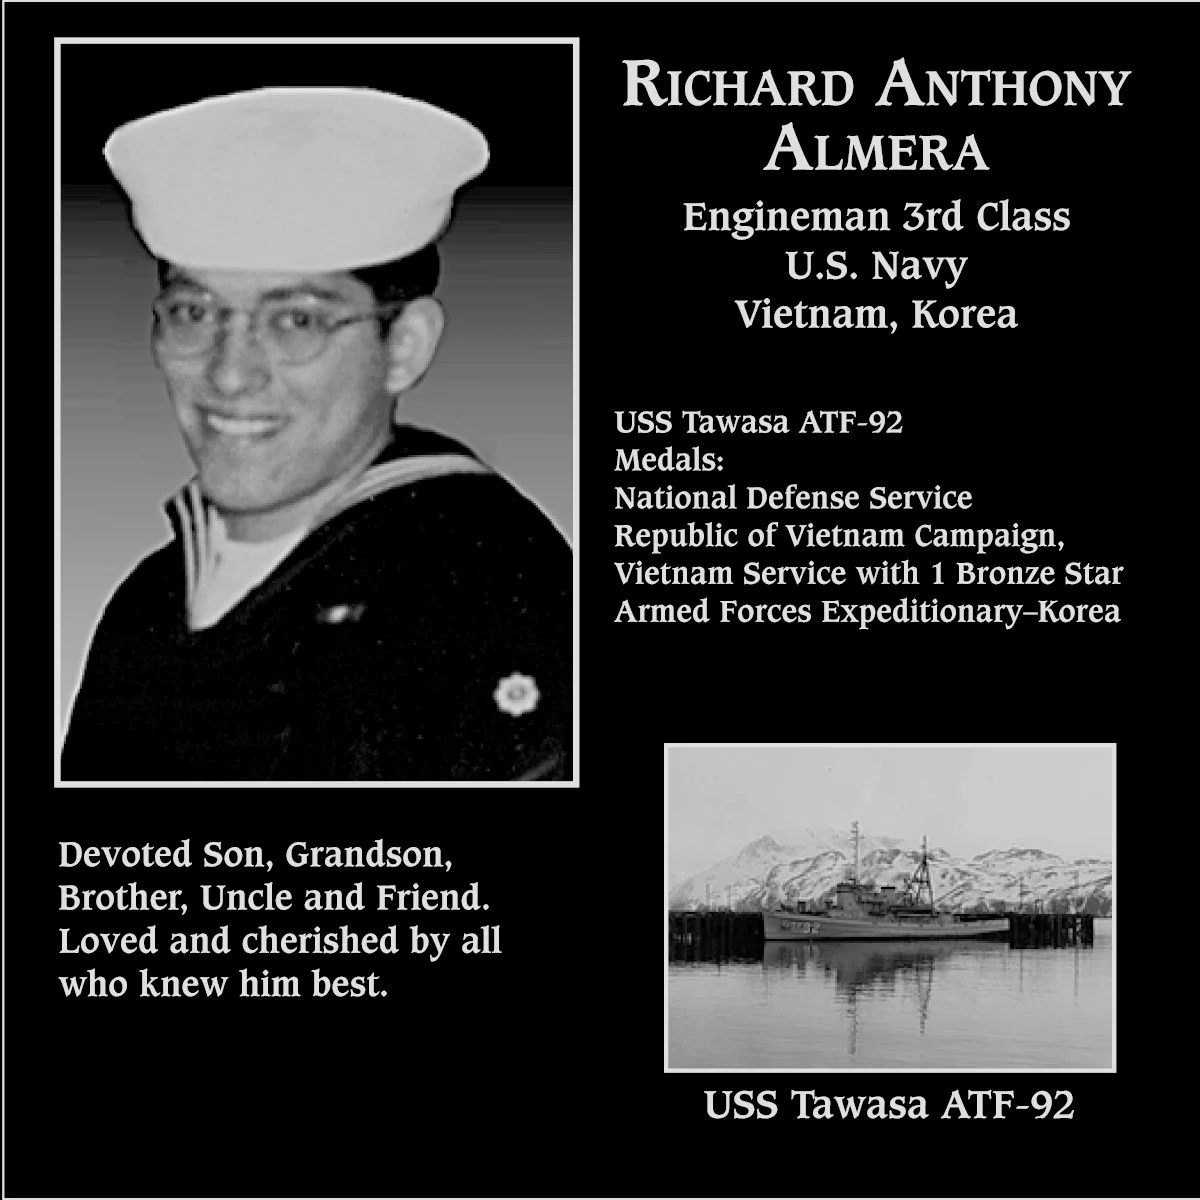 Richard Anthony Almera